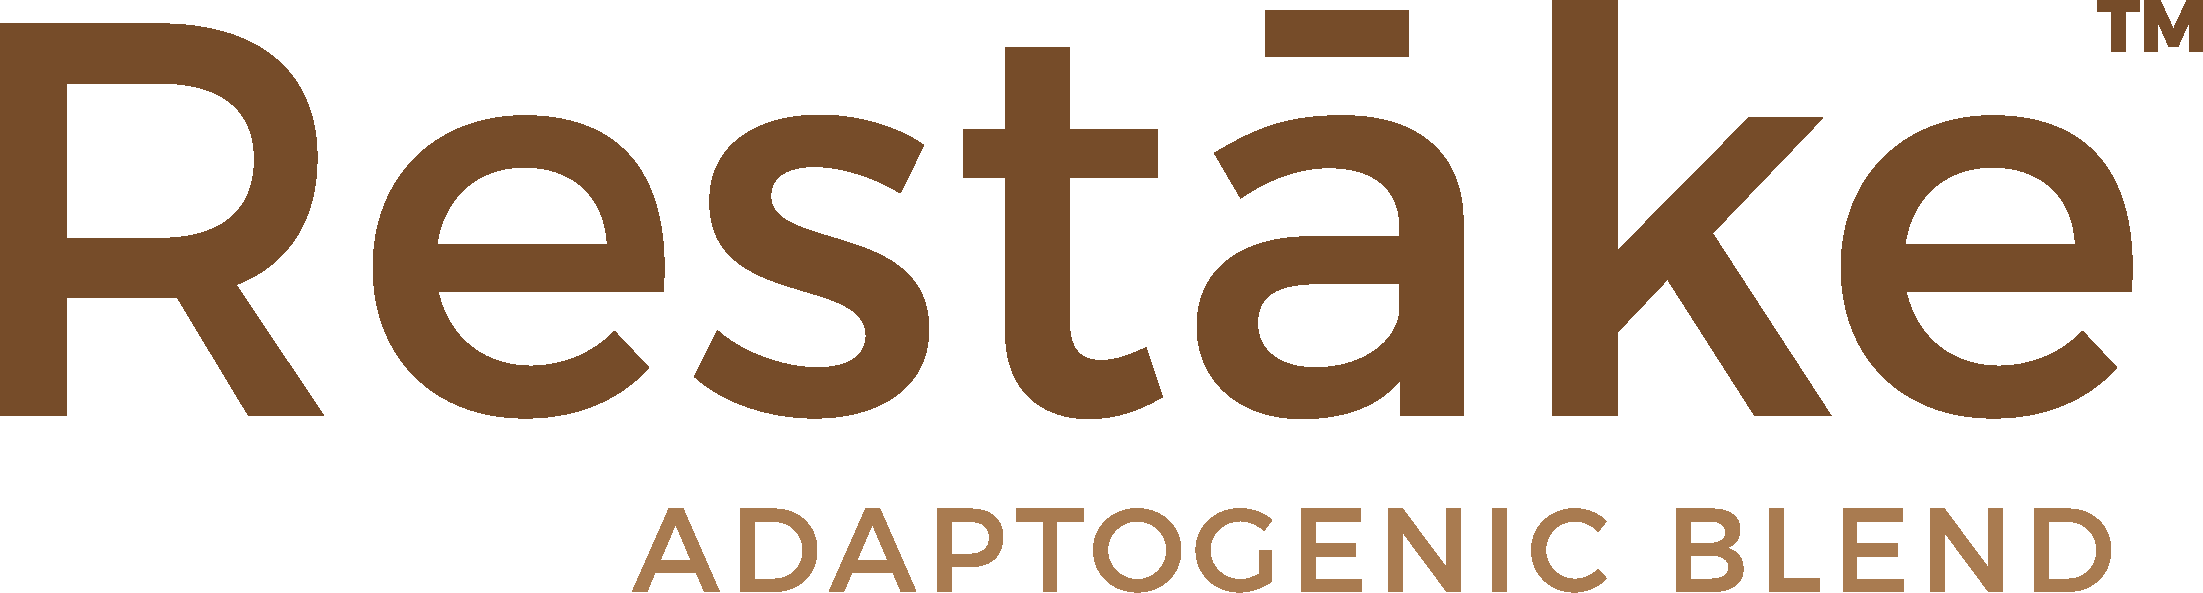 restake logo [outlined]